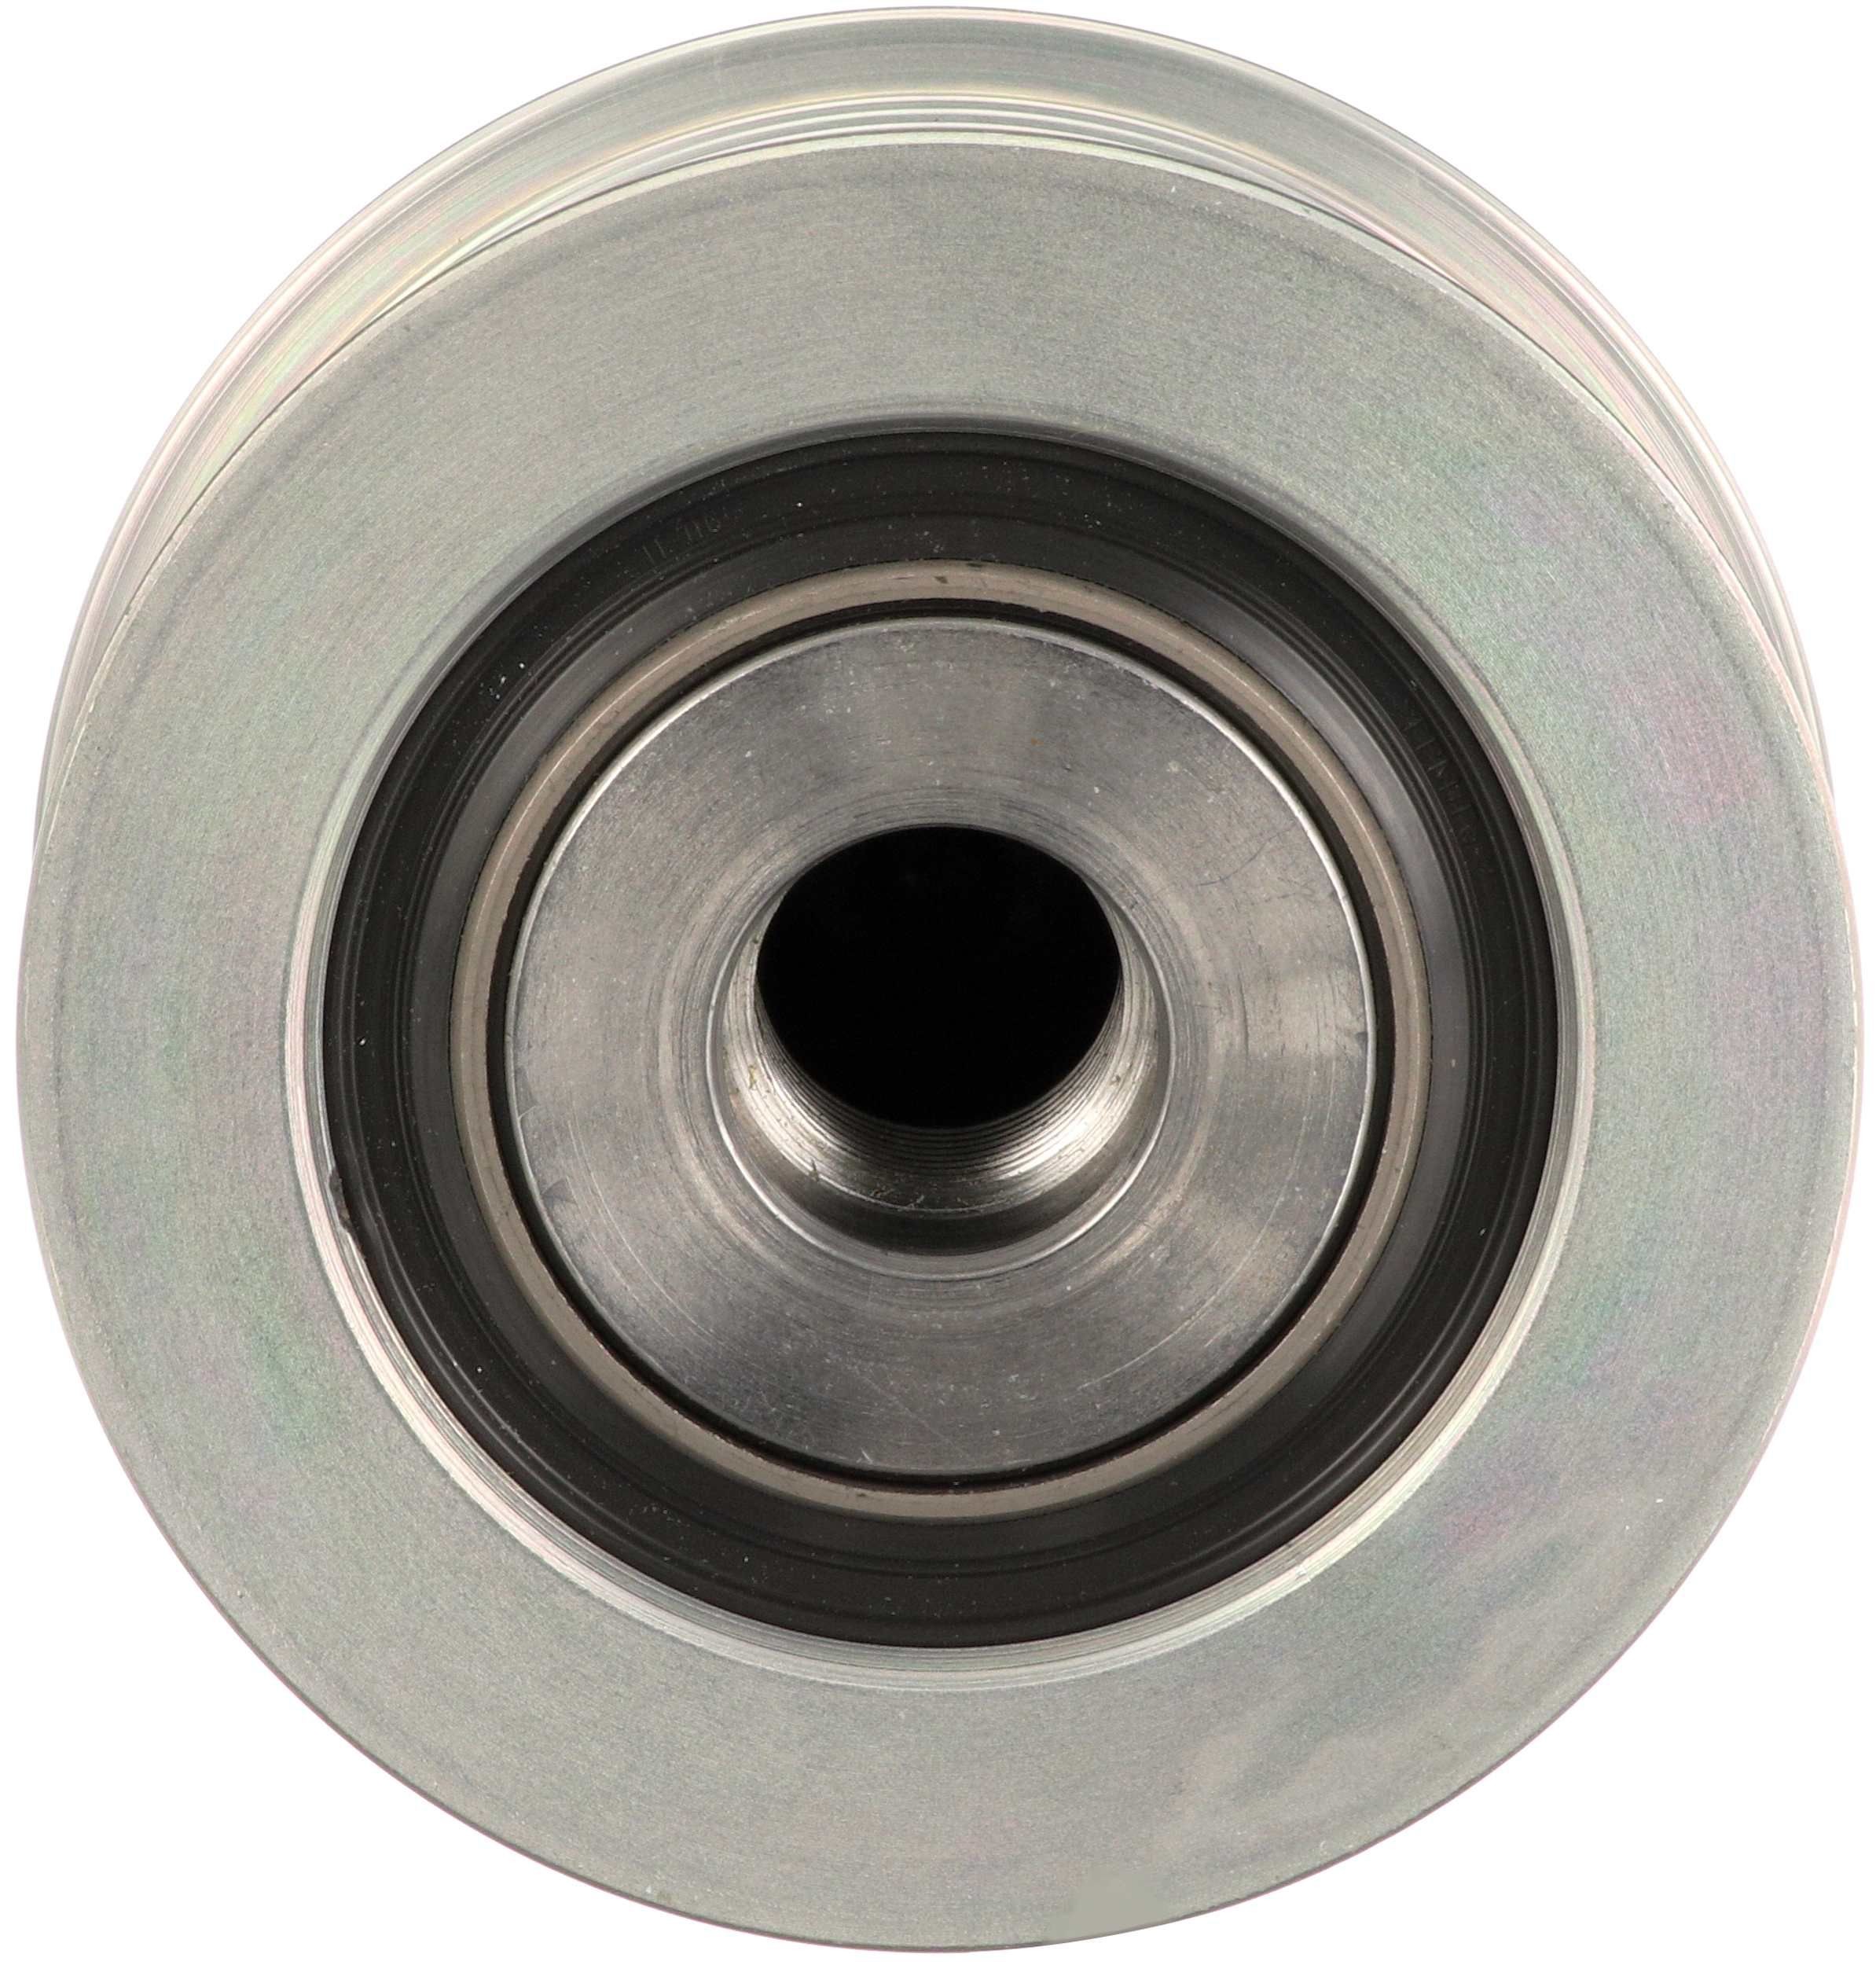 GATES 7789-10307 Alternator Freewheel Clutch Metal, Width: 38mm